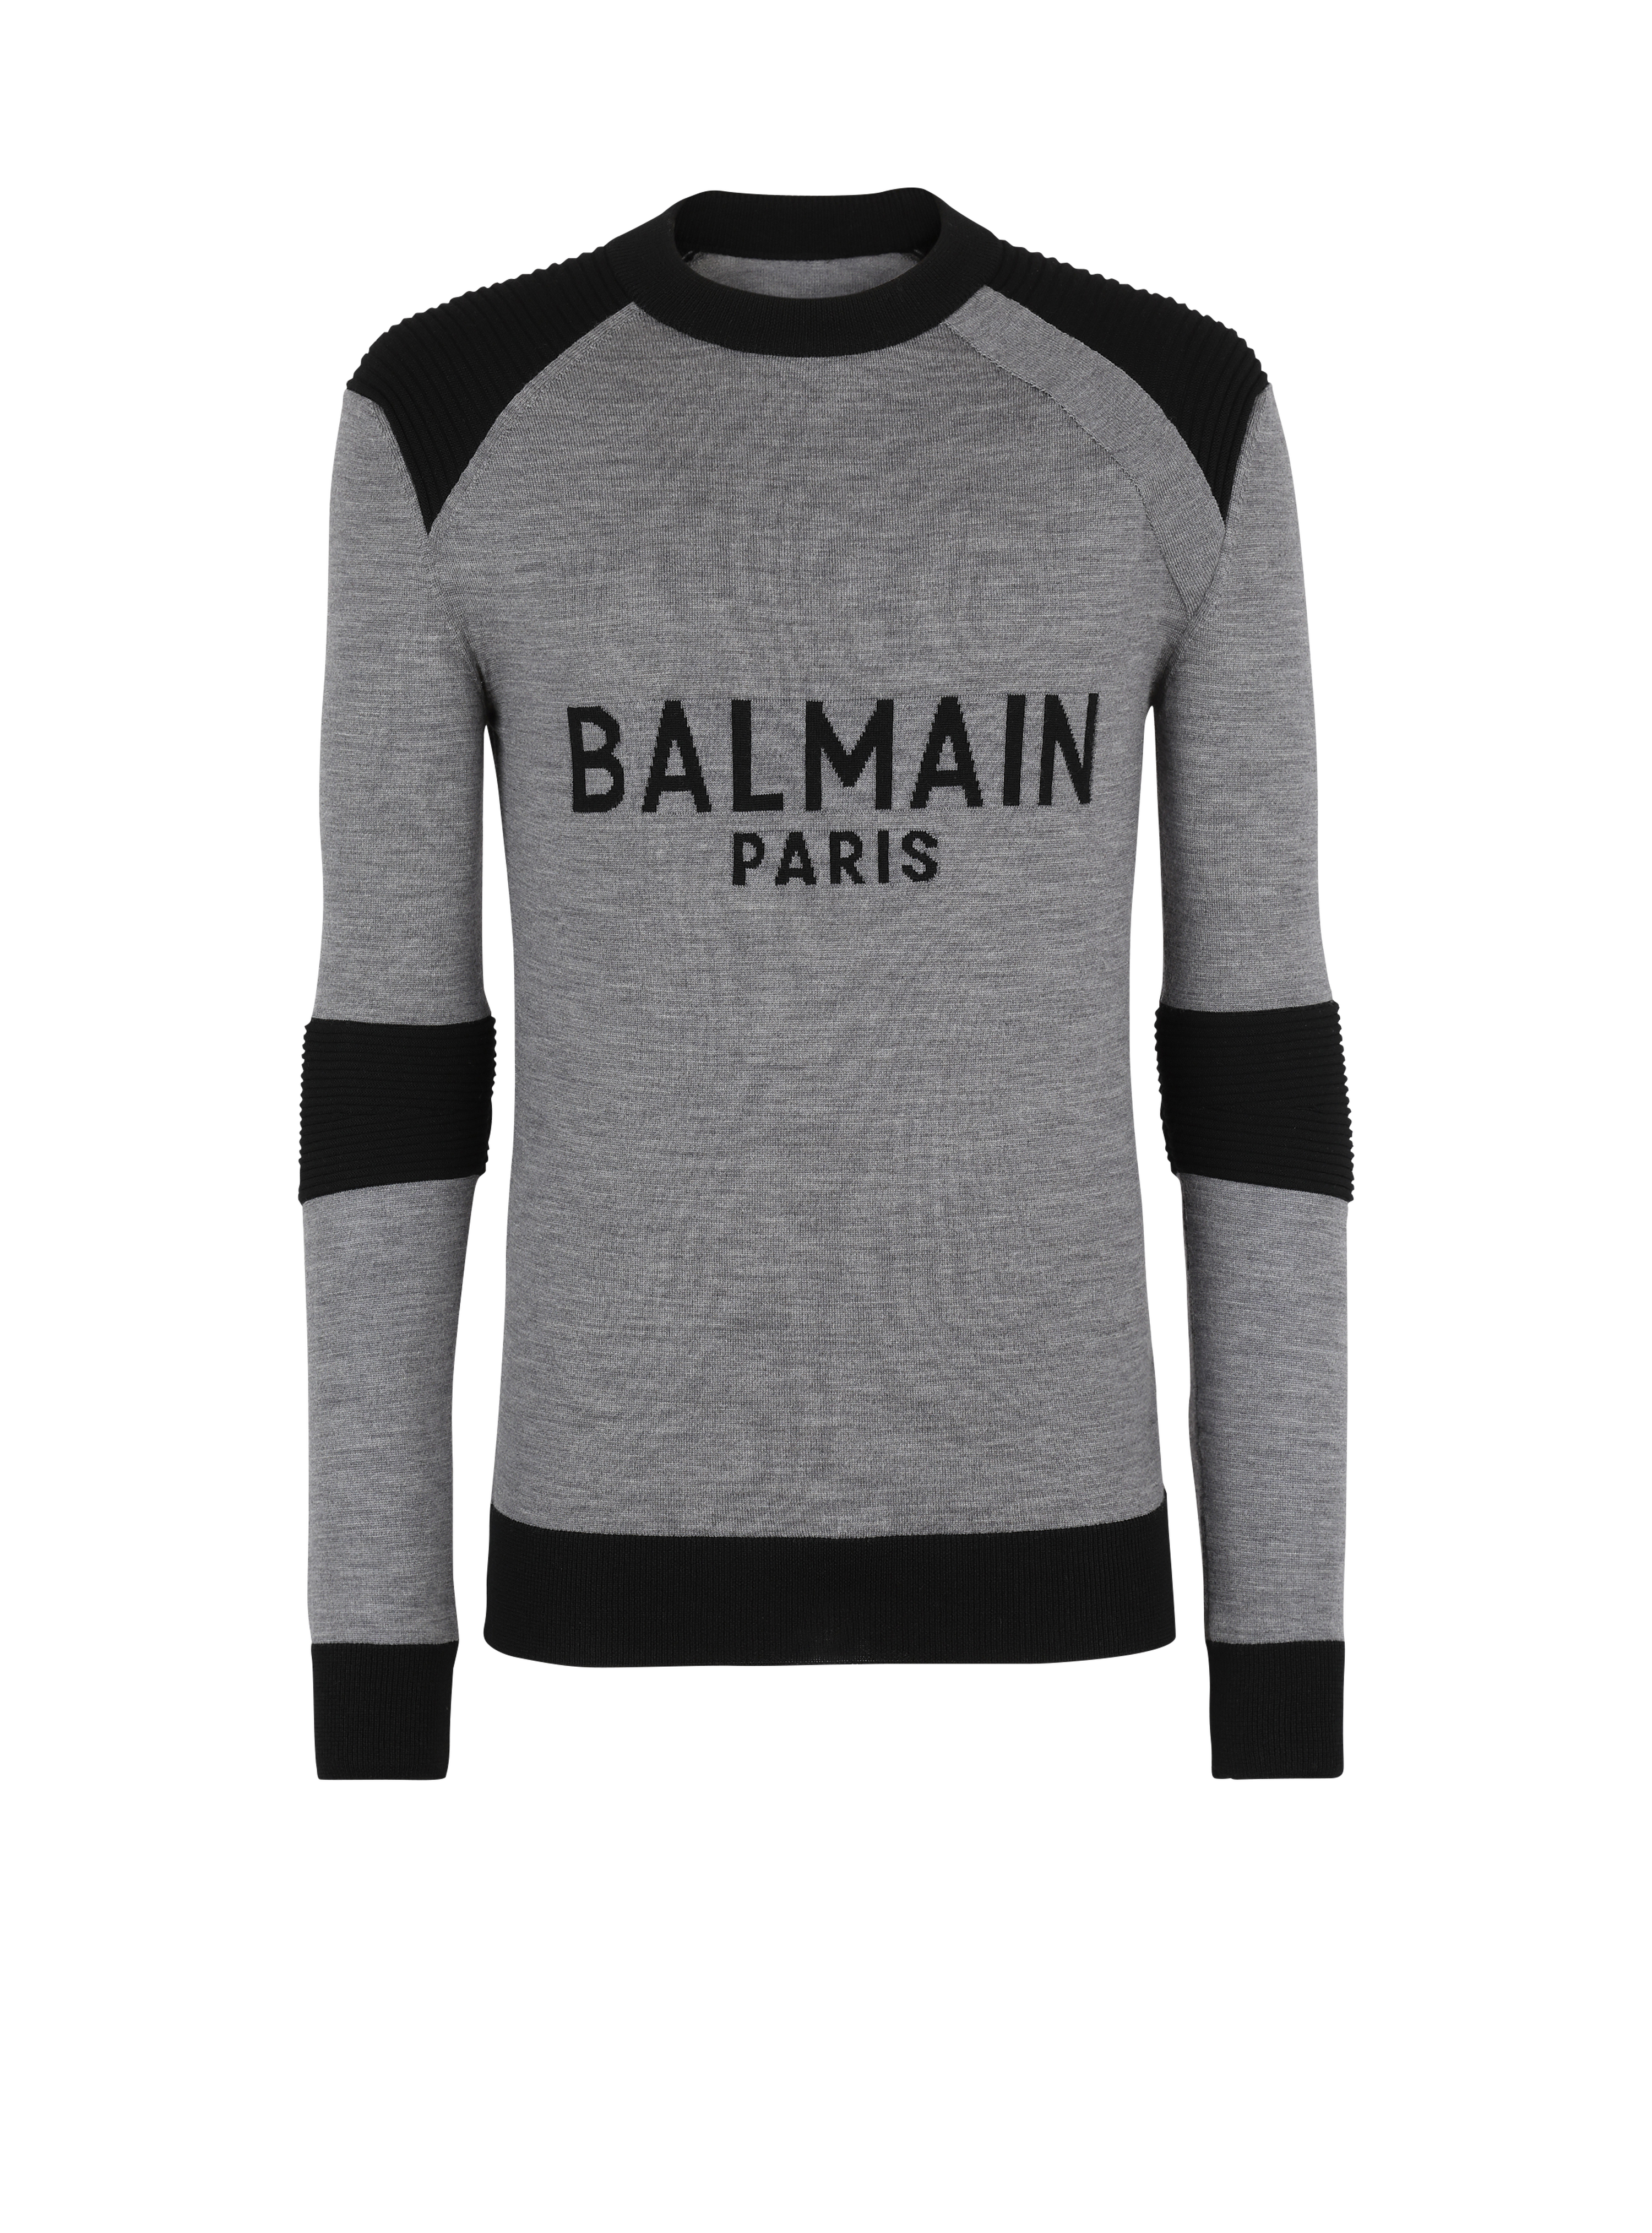 Balmain Paris 로고 디테일 울 스웨터, 회색